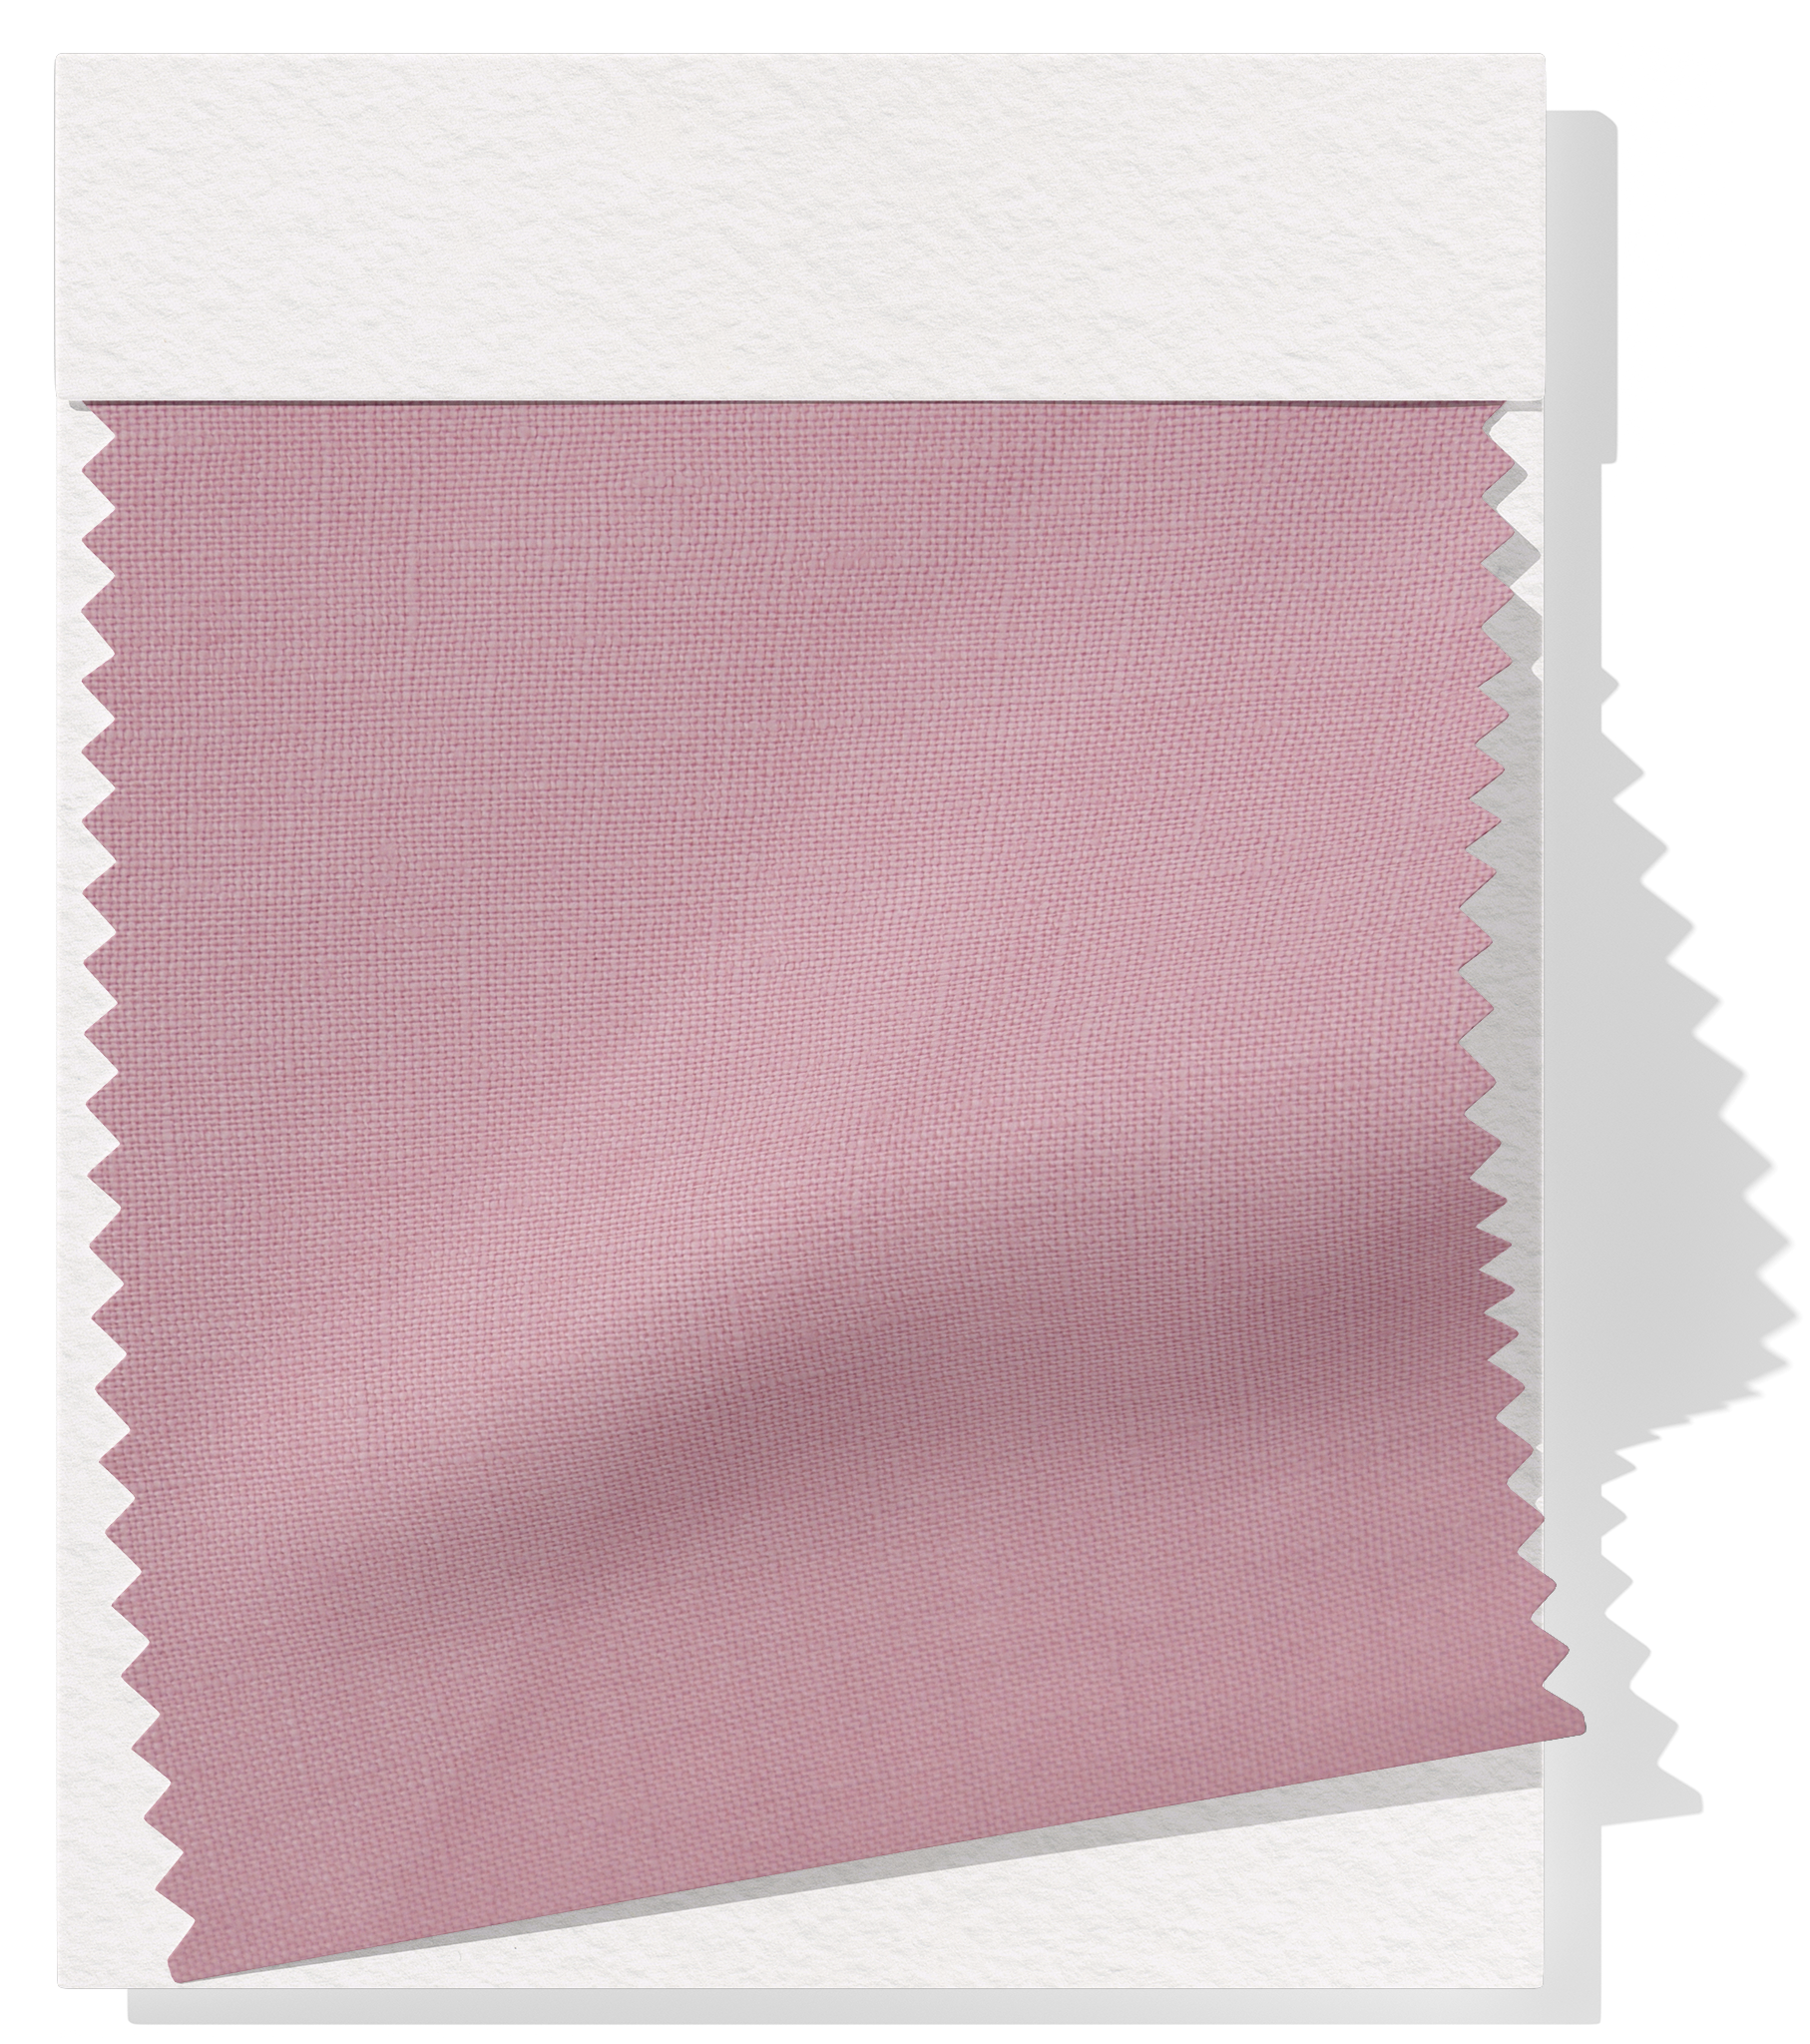 100% Linen $28.00 p/m - Dusky Pink